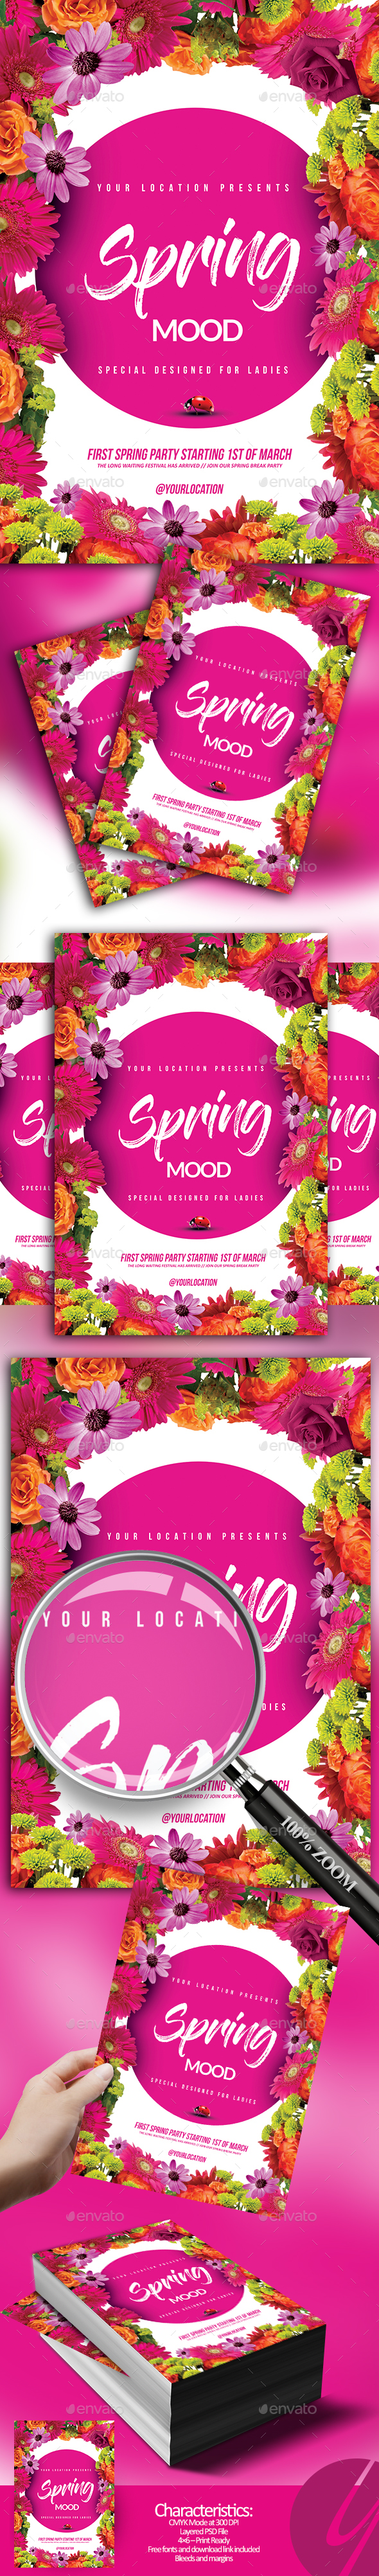 Spring Mood Flyer